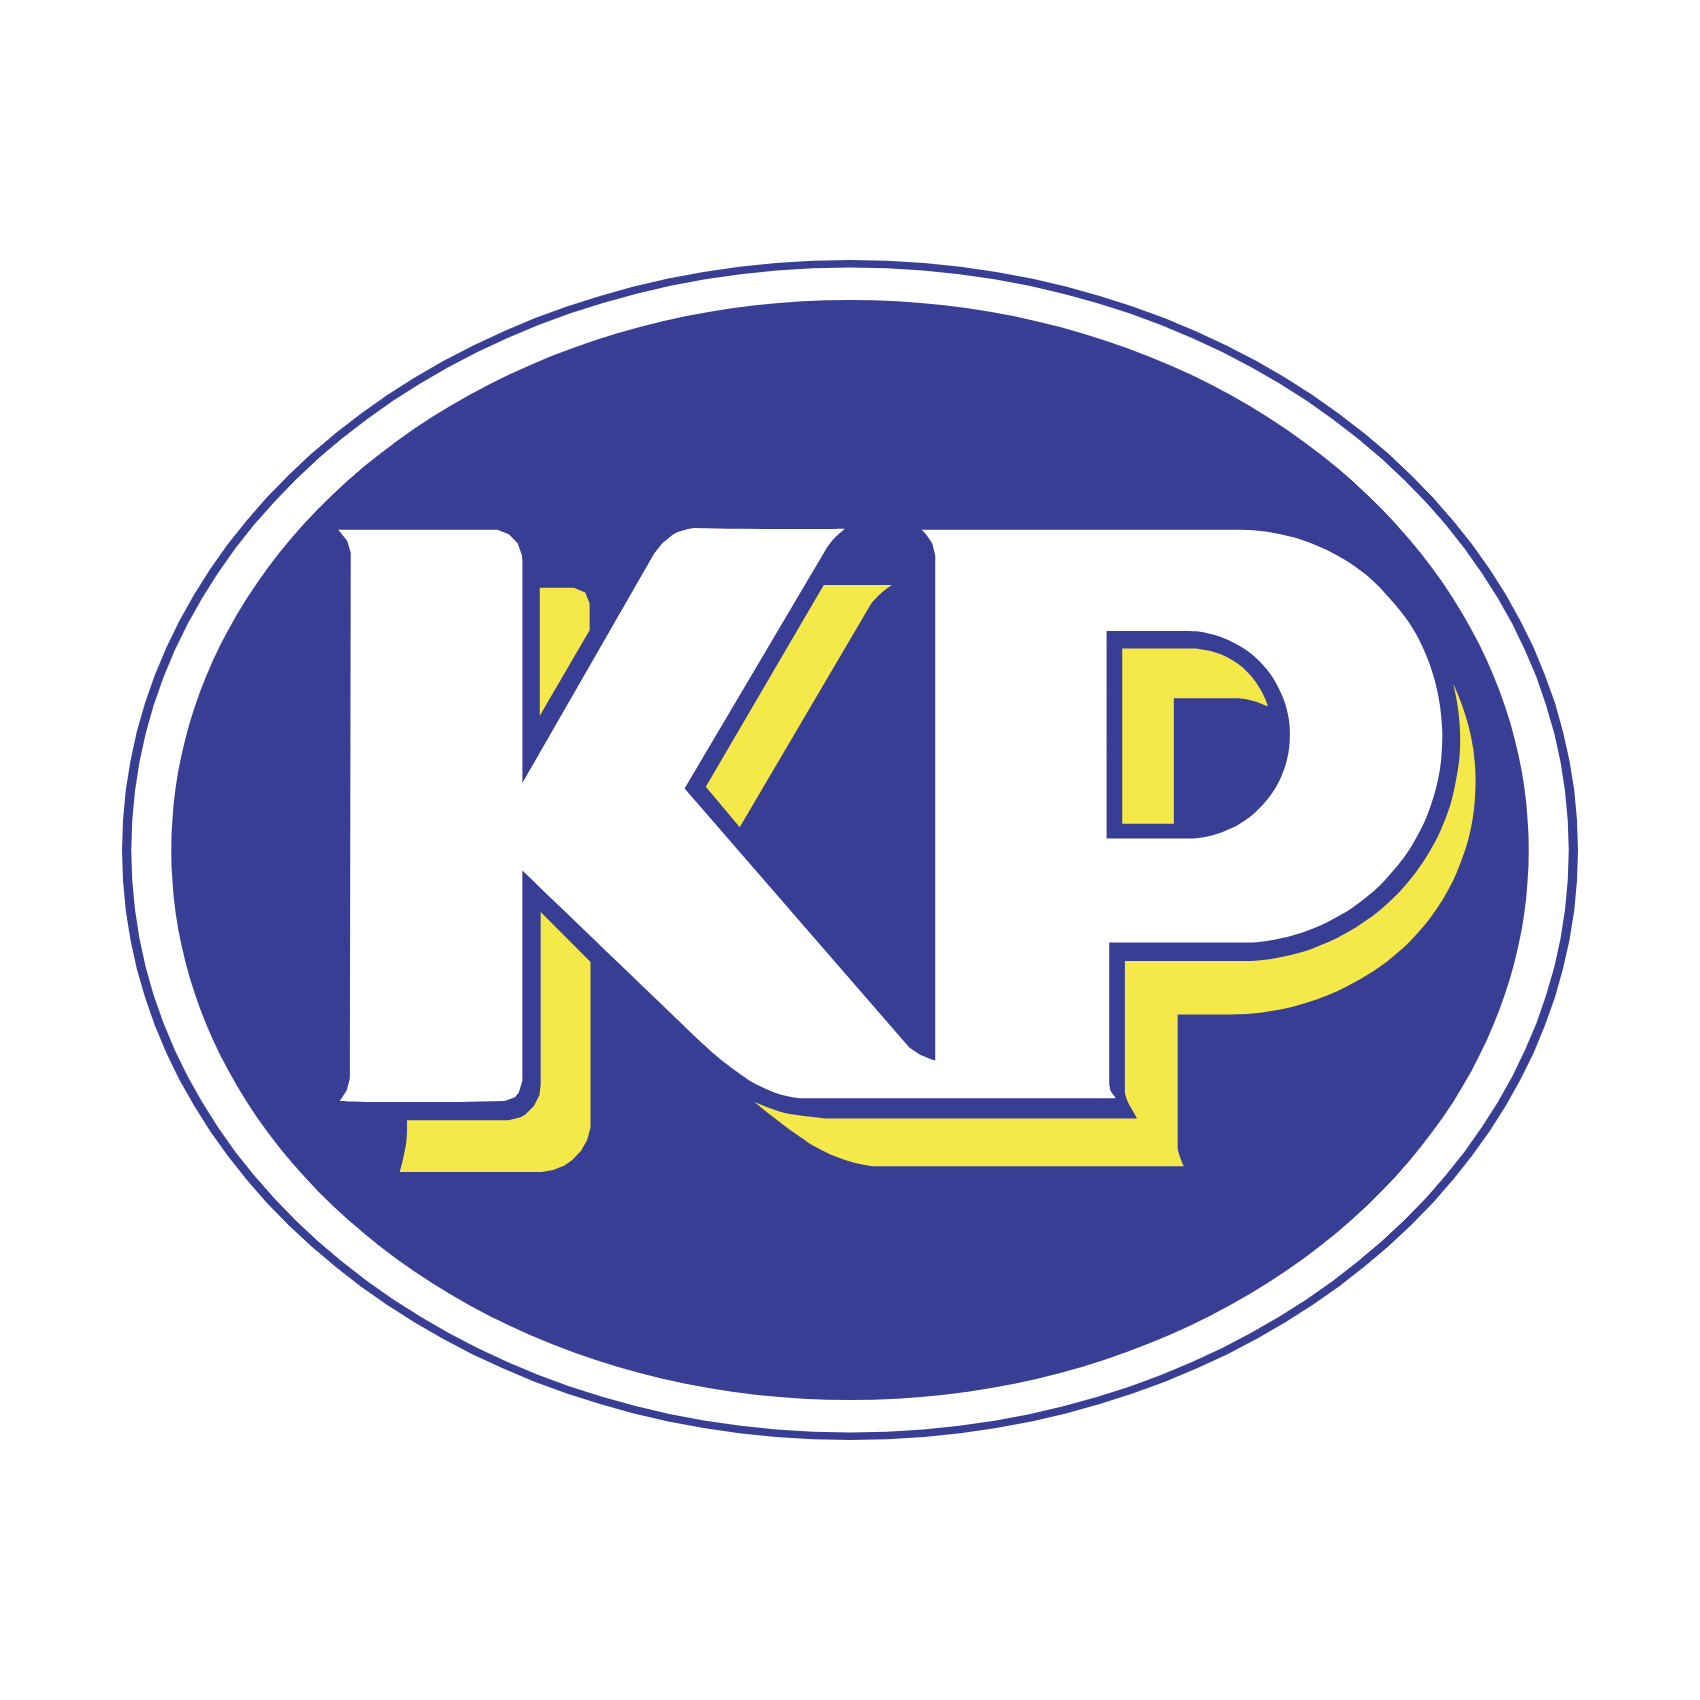 Initial Linked Letter KP Logo Design vector Template. Creative Abstract KP  Logo Design Vector Illustration Stock Vector | Adobe Stock